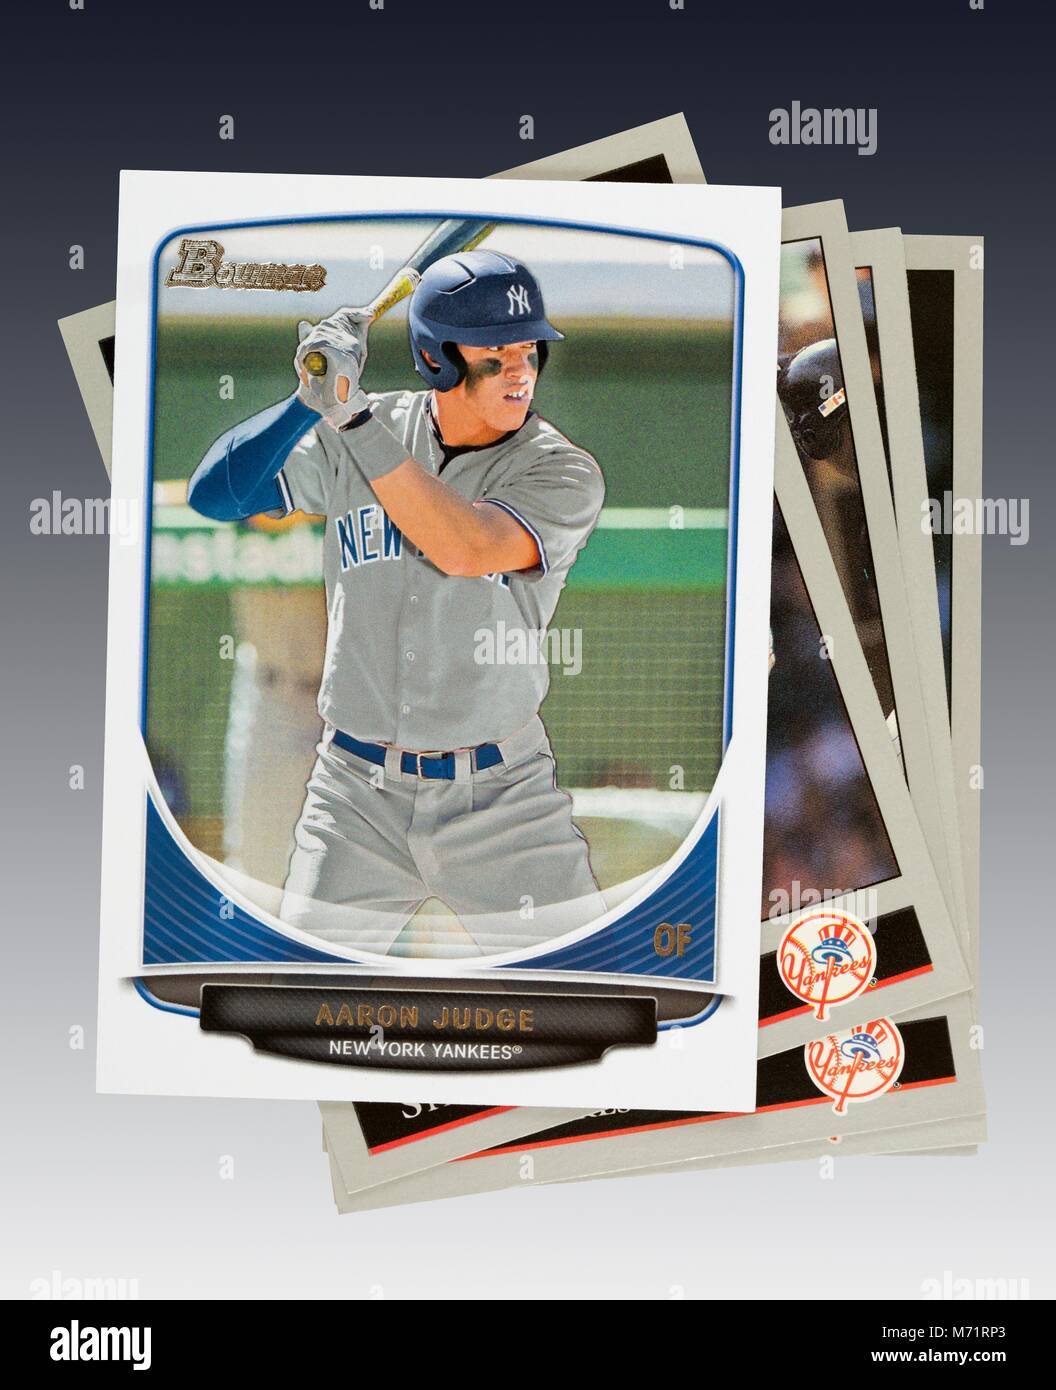 Aaron Richter der New York Yankees 2013 Bowman rookie card auf Stapel von Baseball Karten Stockfoto